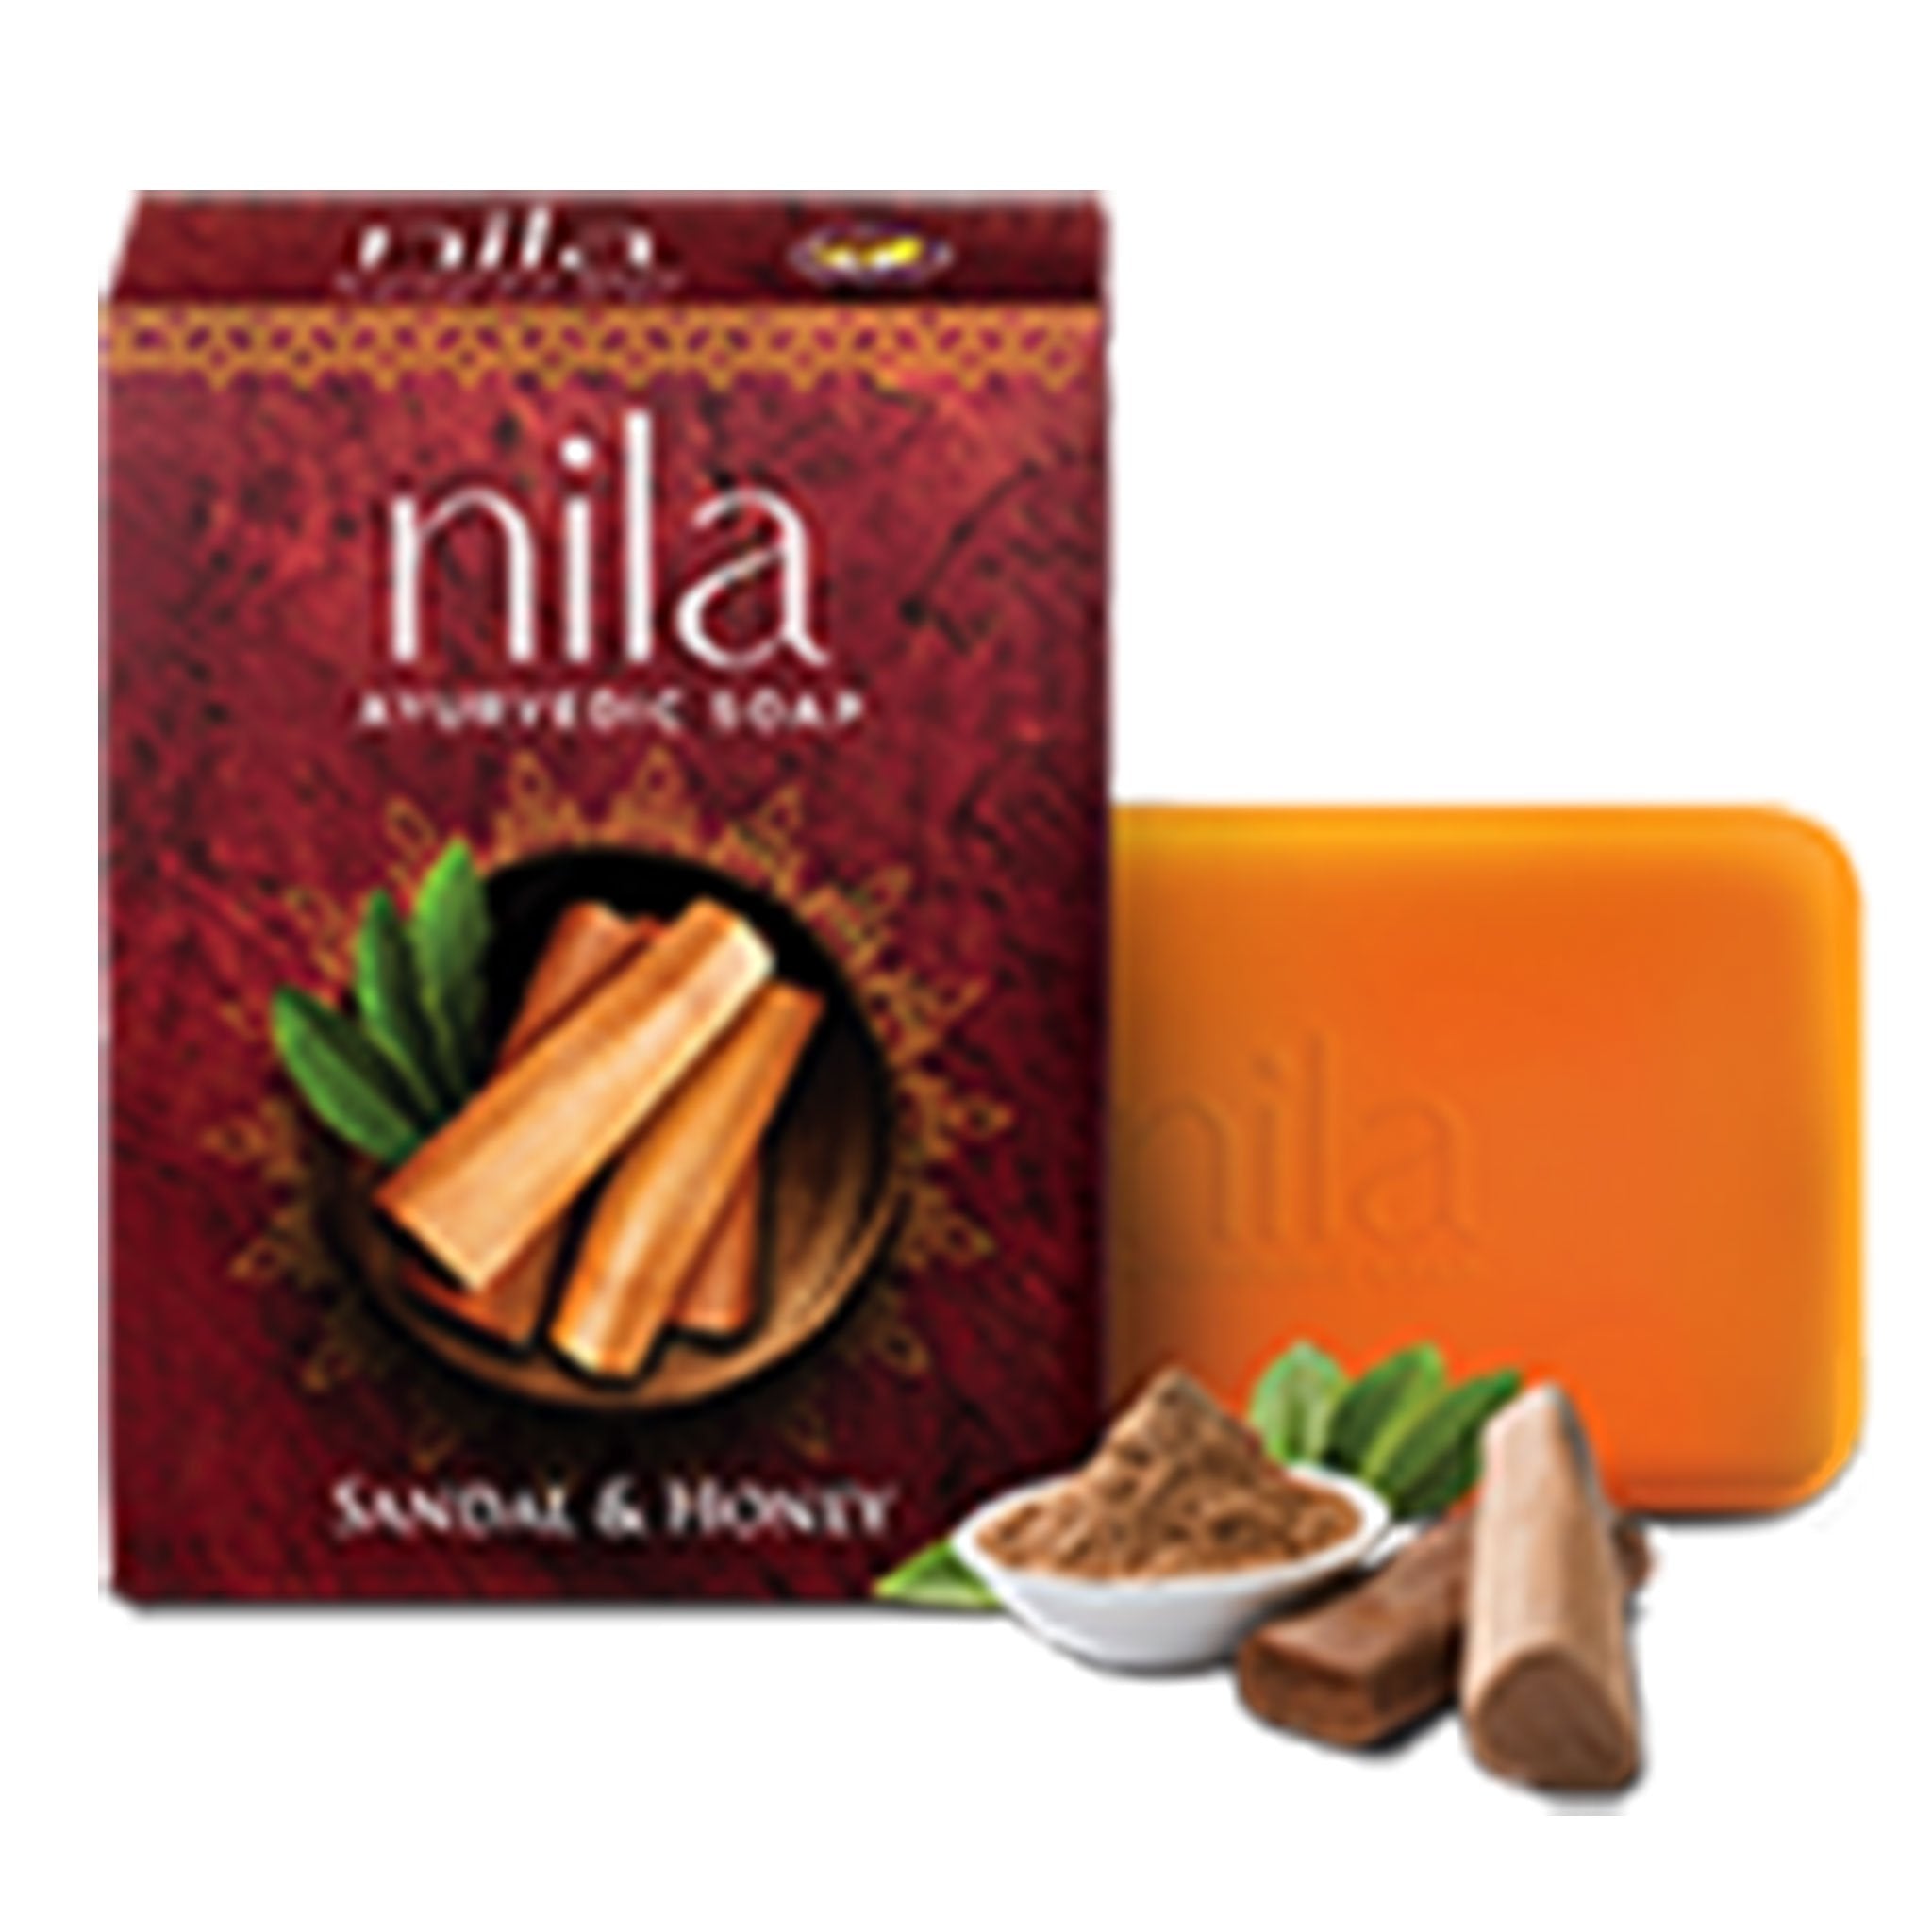 Nila  Sandal  Honey Ayurvedic Soap 75g Value Pack of 4 